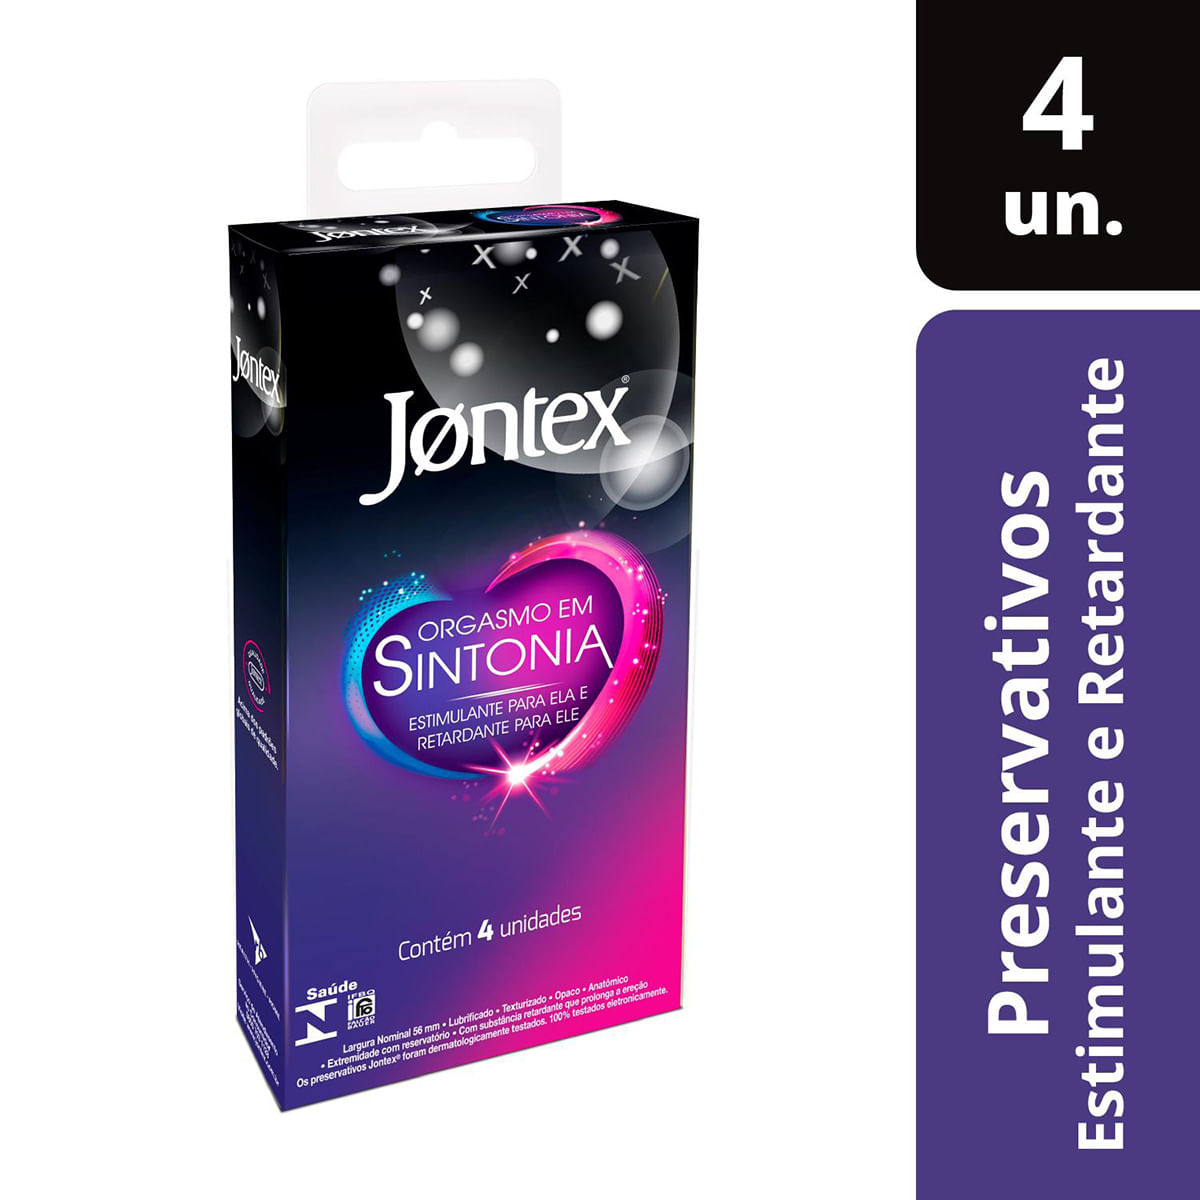 Orgasmo em Sintonia Preservativo Estimulante para Ela e Retardante para Ele com 4 unidades Jontex